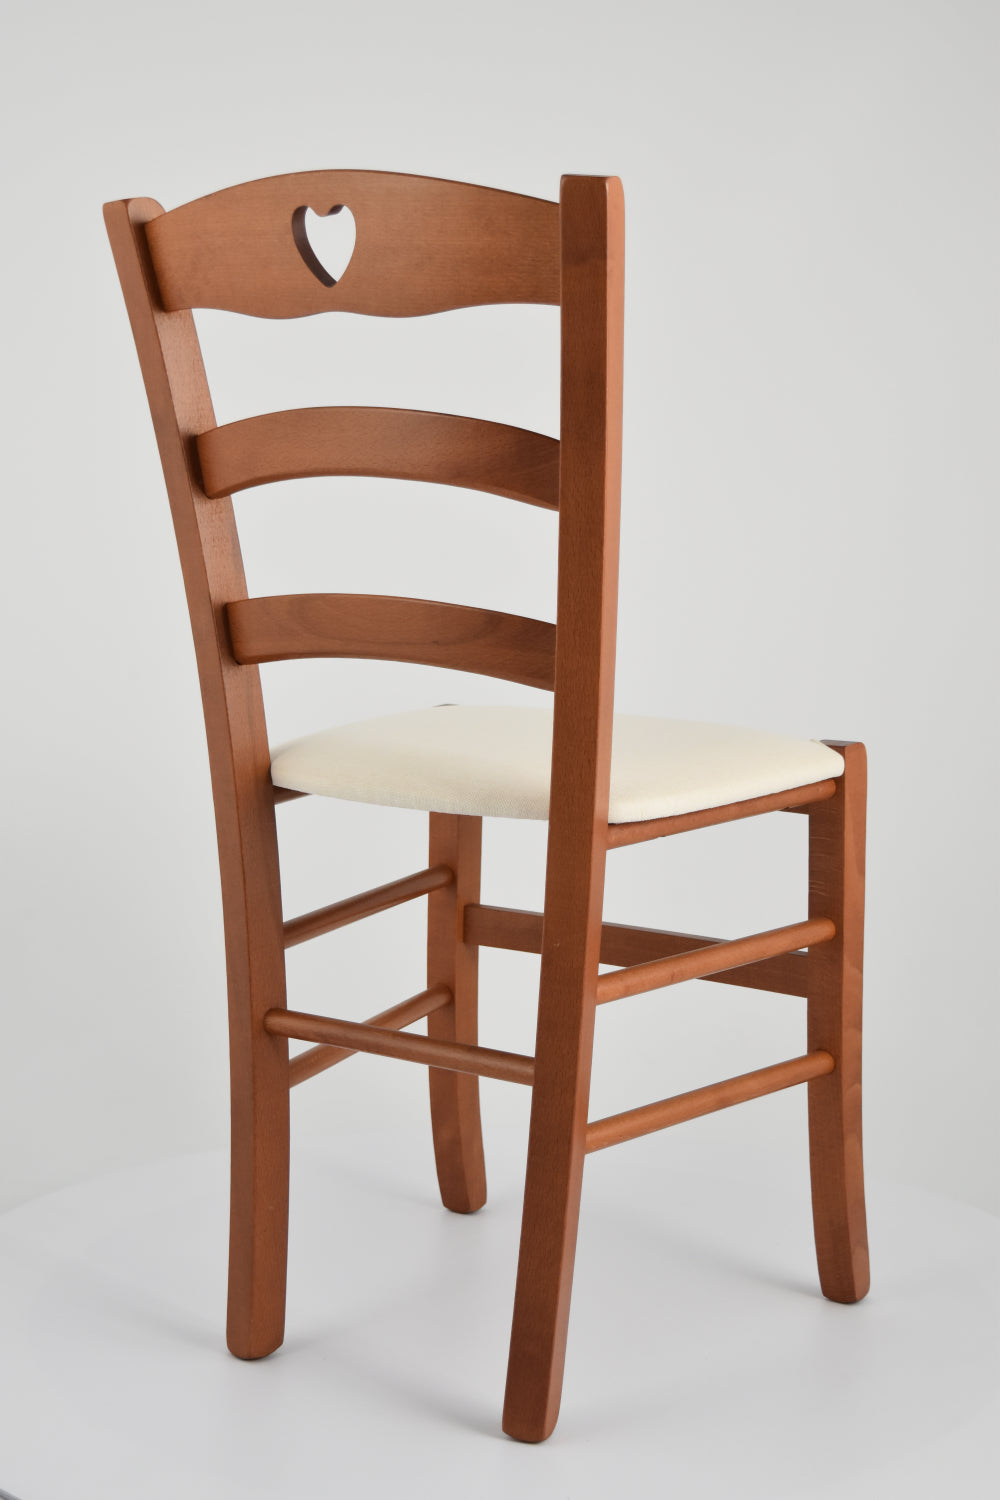 Tommychairs - Set 4 sillas de Cocina y Comedor Cuore, Estructura en Madera de Haya Color Cerezo y Asiento tapizado en Tejido Color Marfil